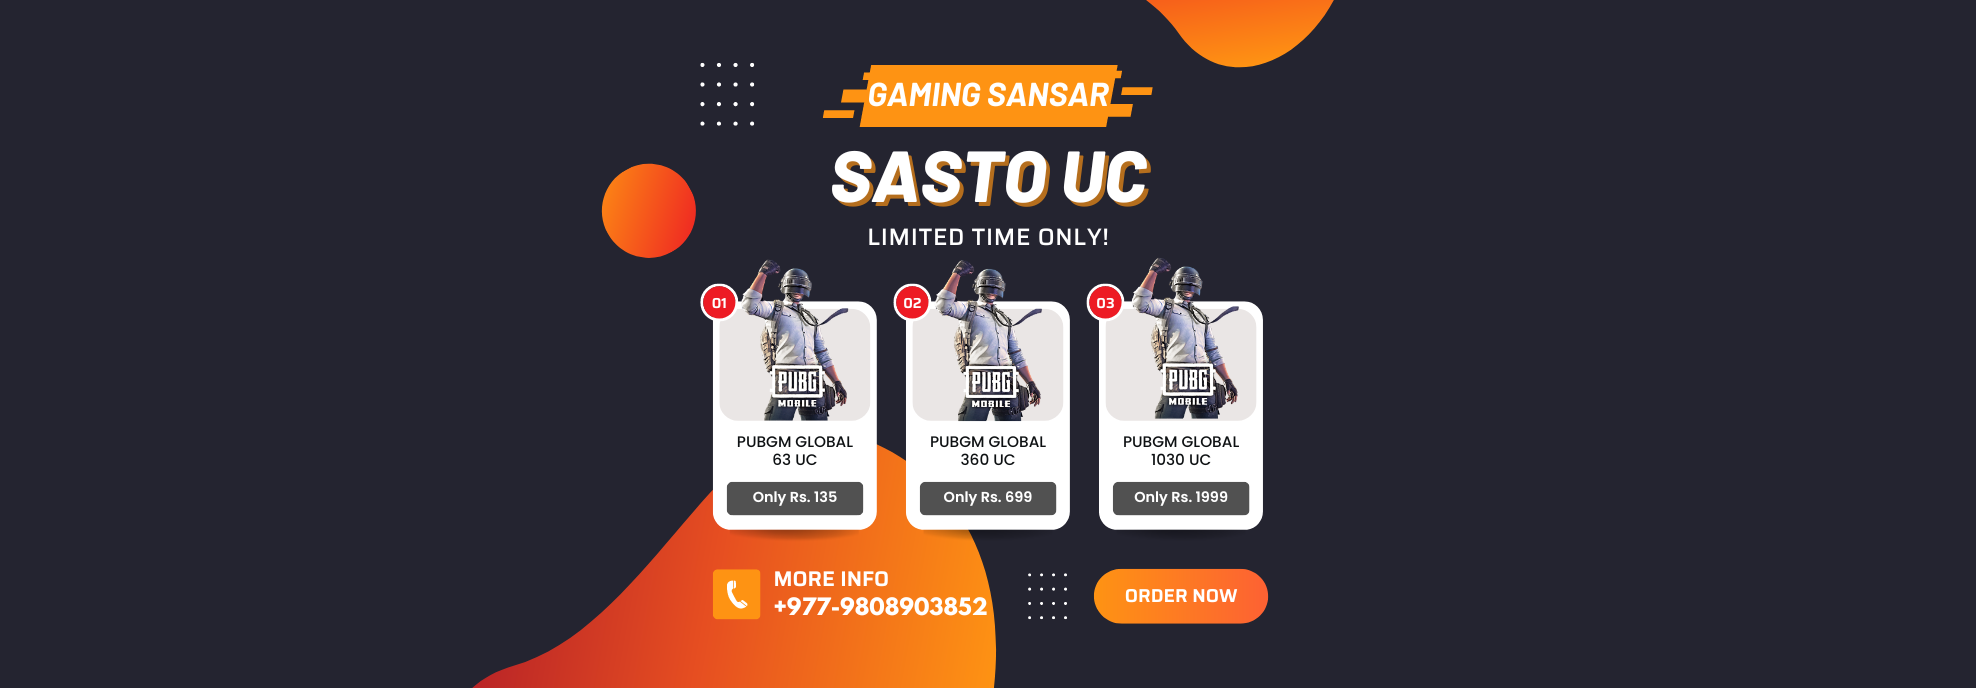 Sasto UC - Gaming Sansar